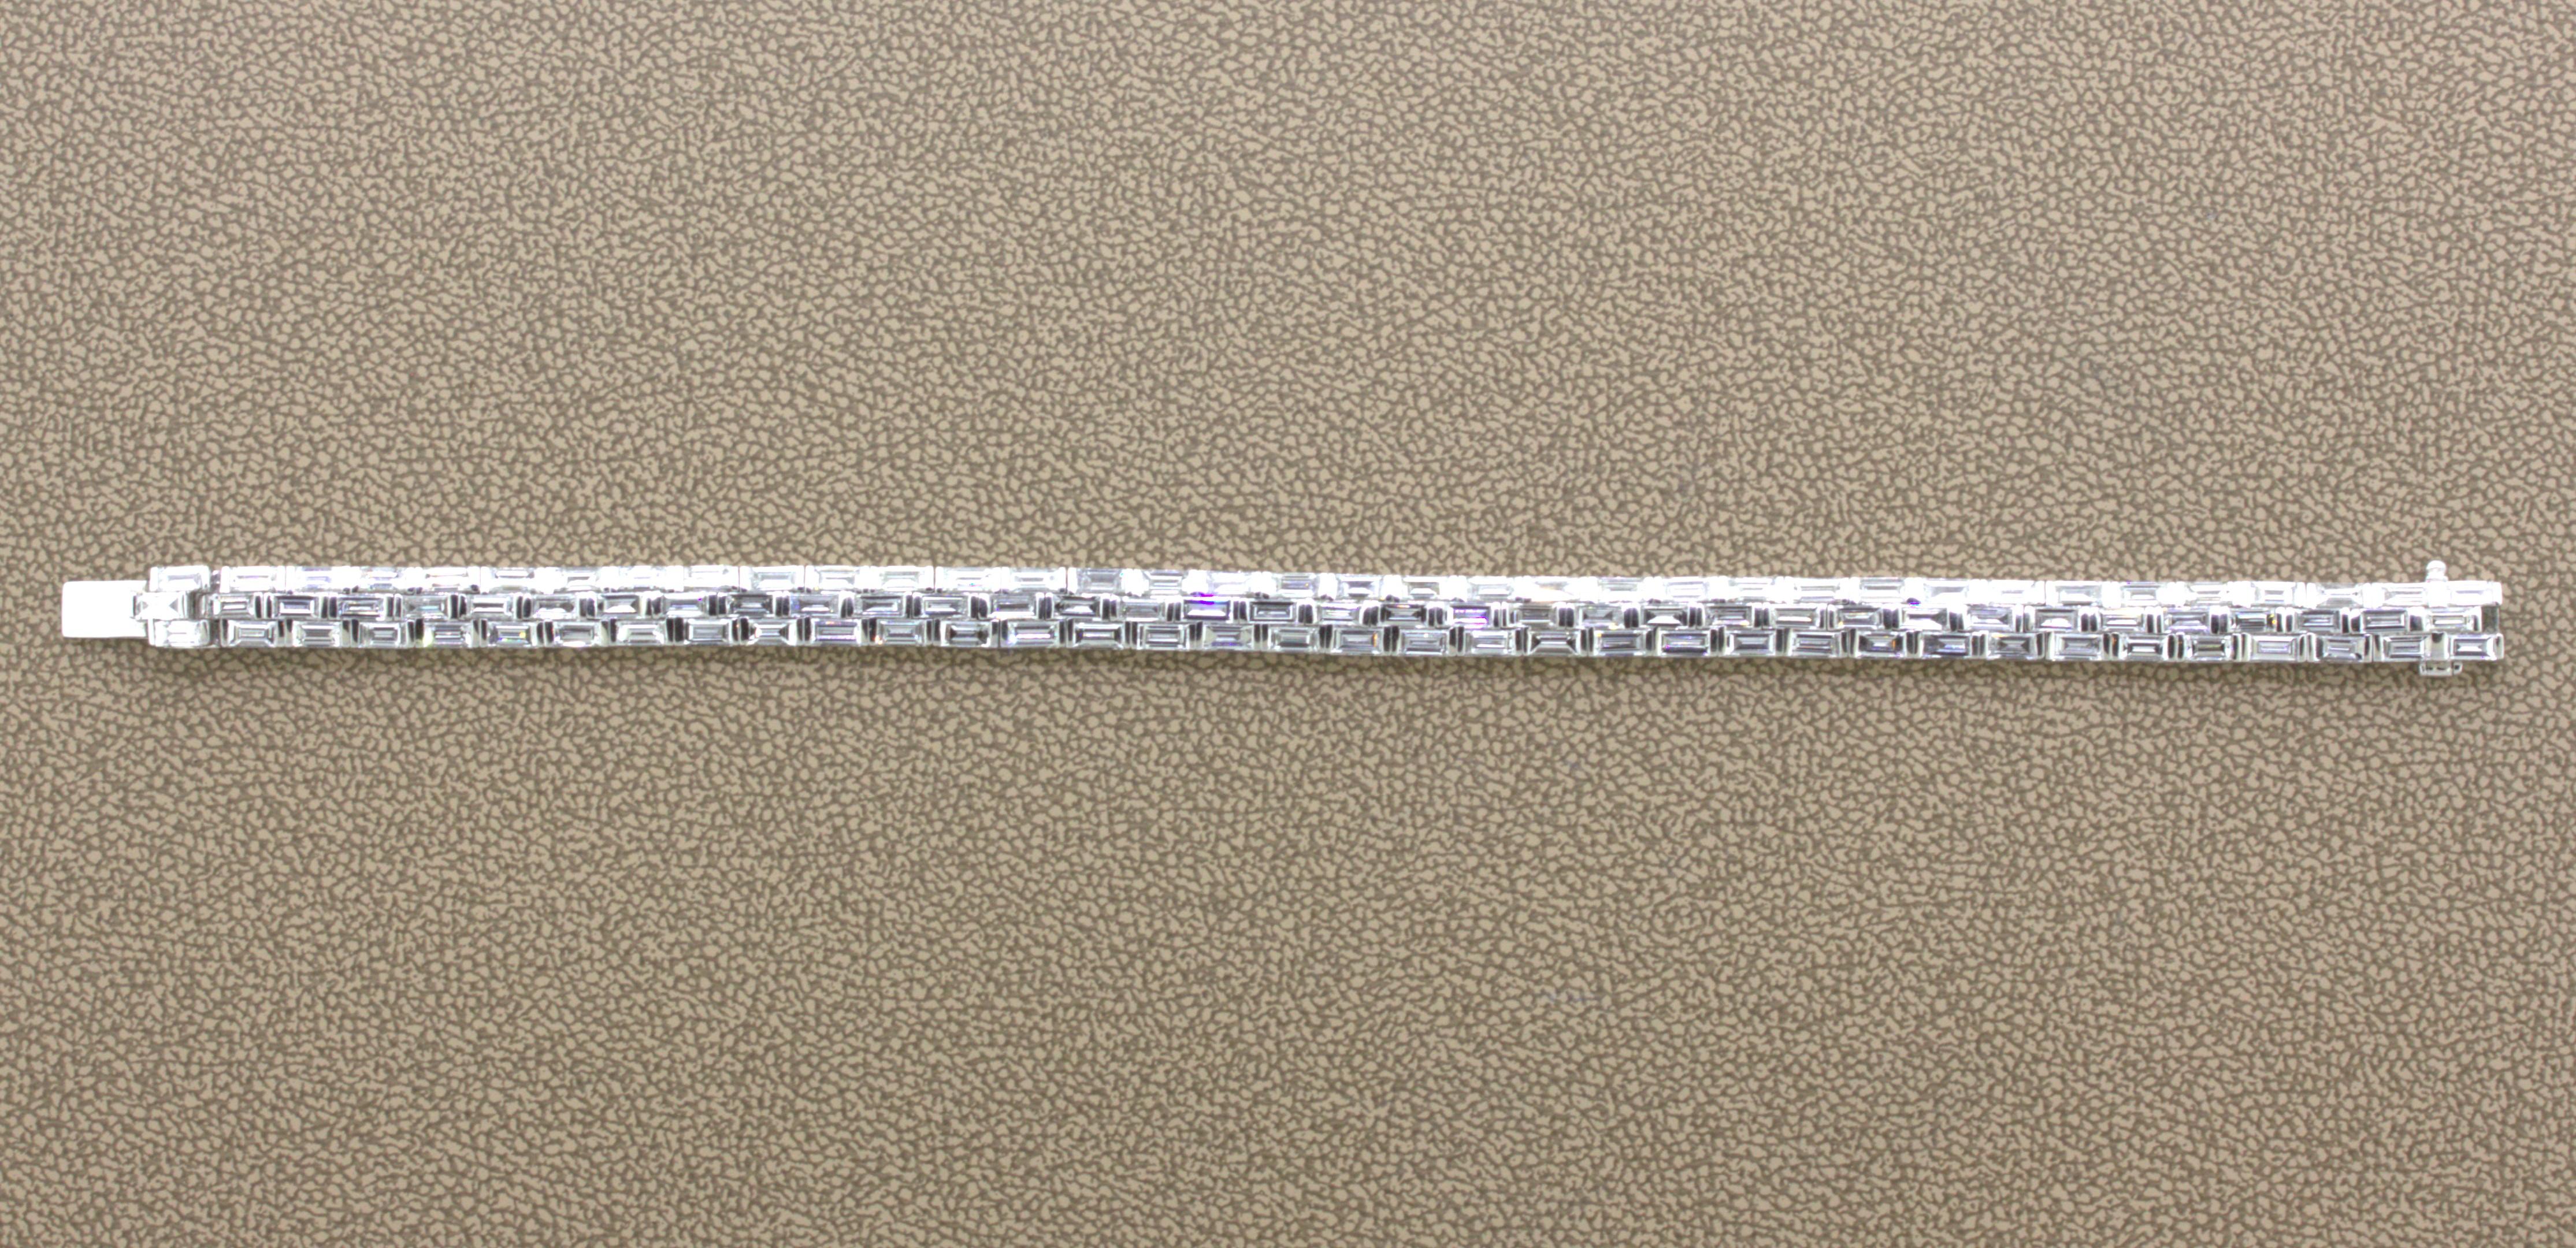 Ein schickes und elegantes Tennisarmband mit einem modernen Design. Er besteht aus 3 Reihen gerader Diamanten im Baguetteschliff, die nebeneinander gefasst sind. Die Diamanten wiegen insgesamt 7,97 Karat und sind in Größe, Farbe und Reinheit perfekt